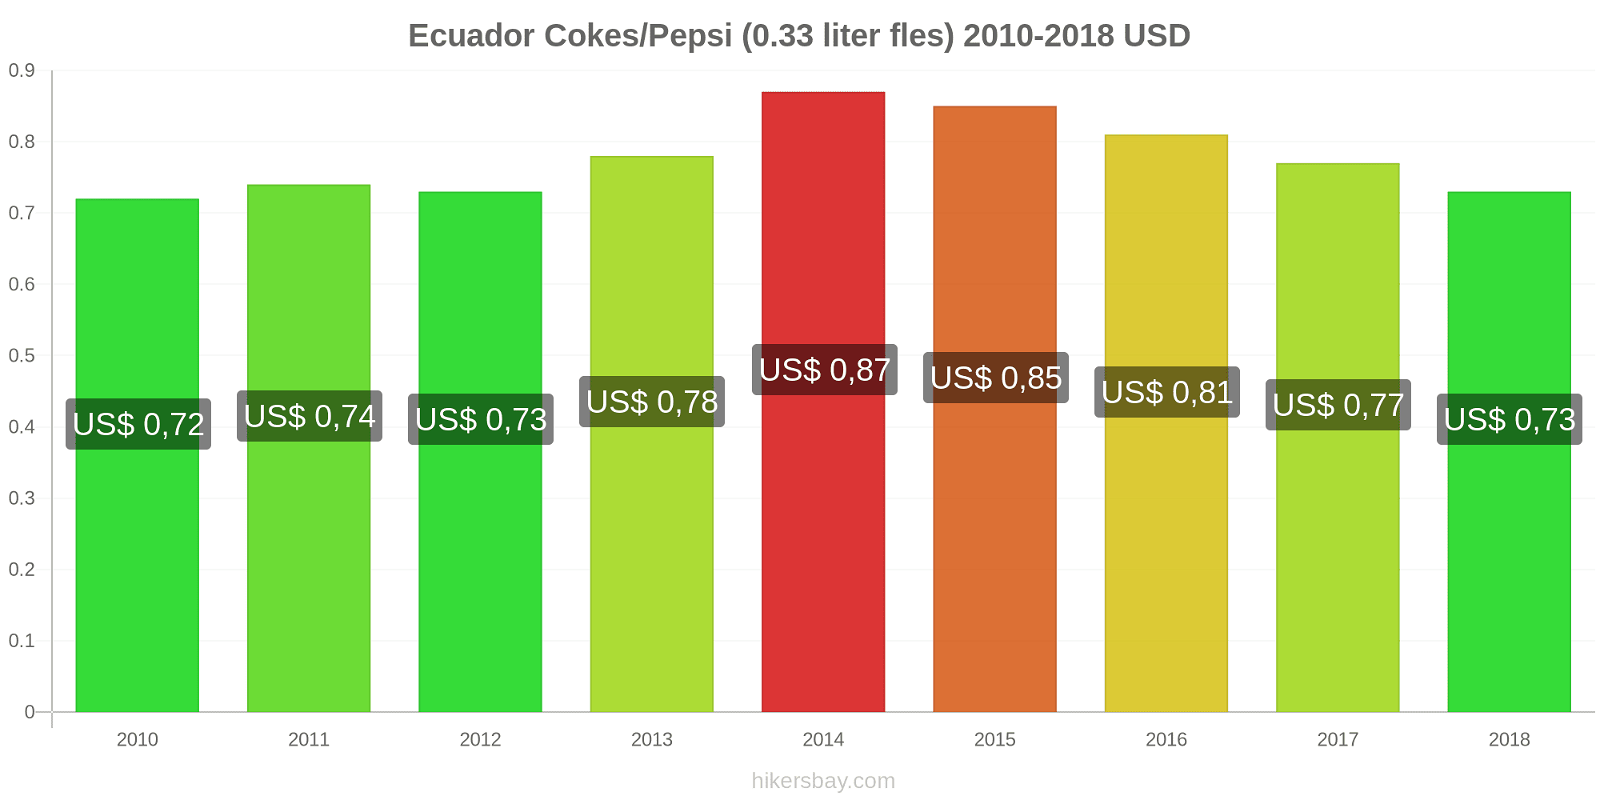 Ecuador prijswijzigingen Cokes/Pepsi (0,33 literfles) hikersbay.com